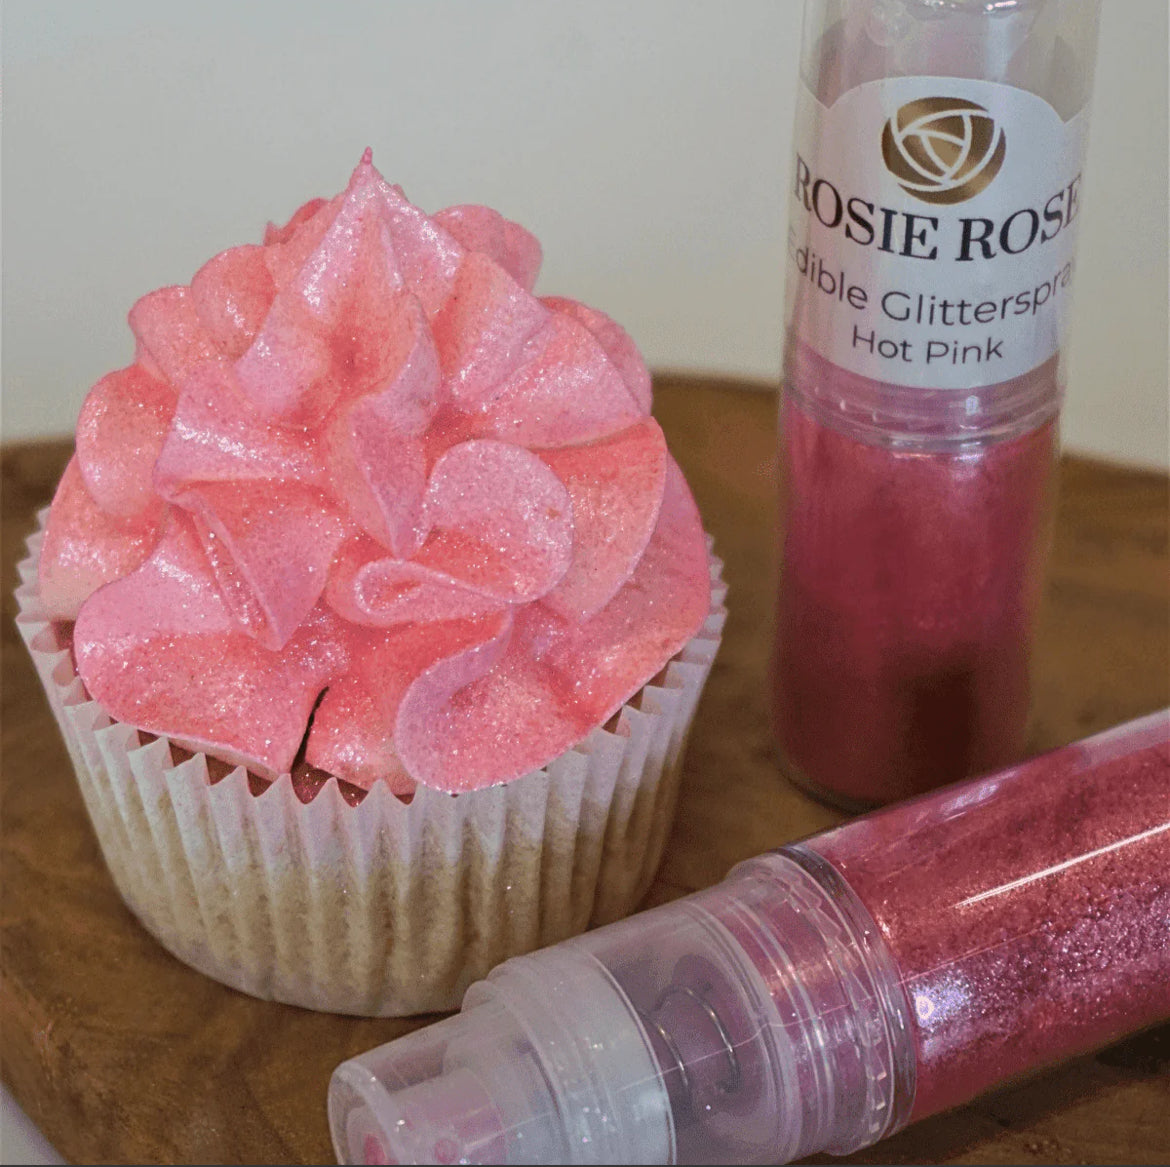 Glitter Spray Hot Pink 5g Rosie Rose - Der Backmichgluecklich Online Shop